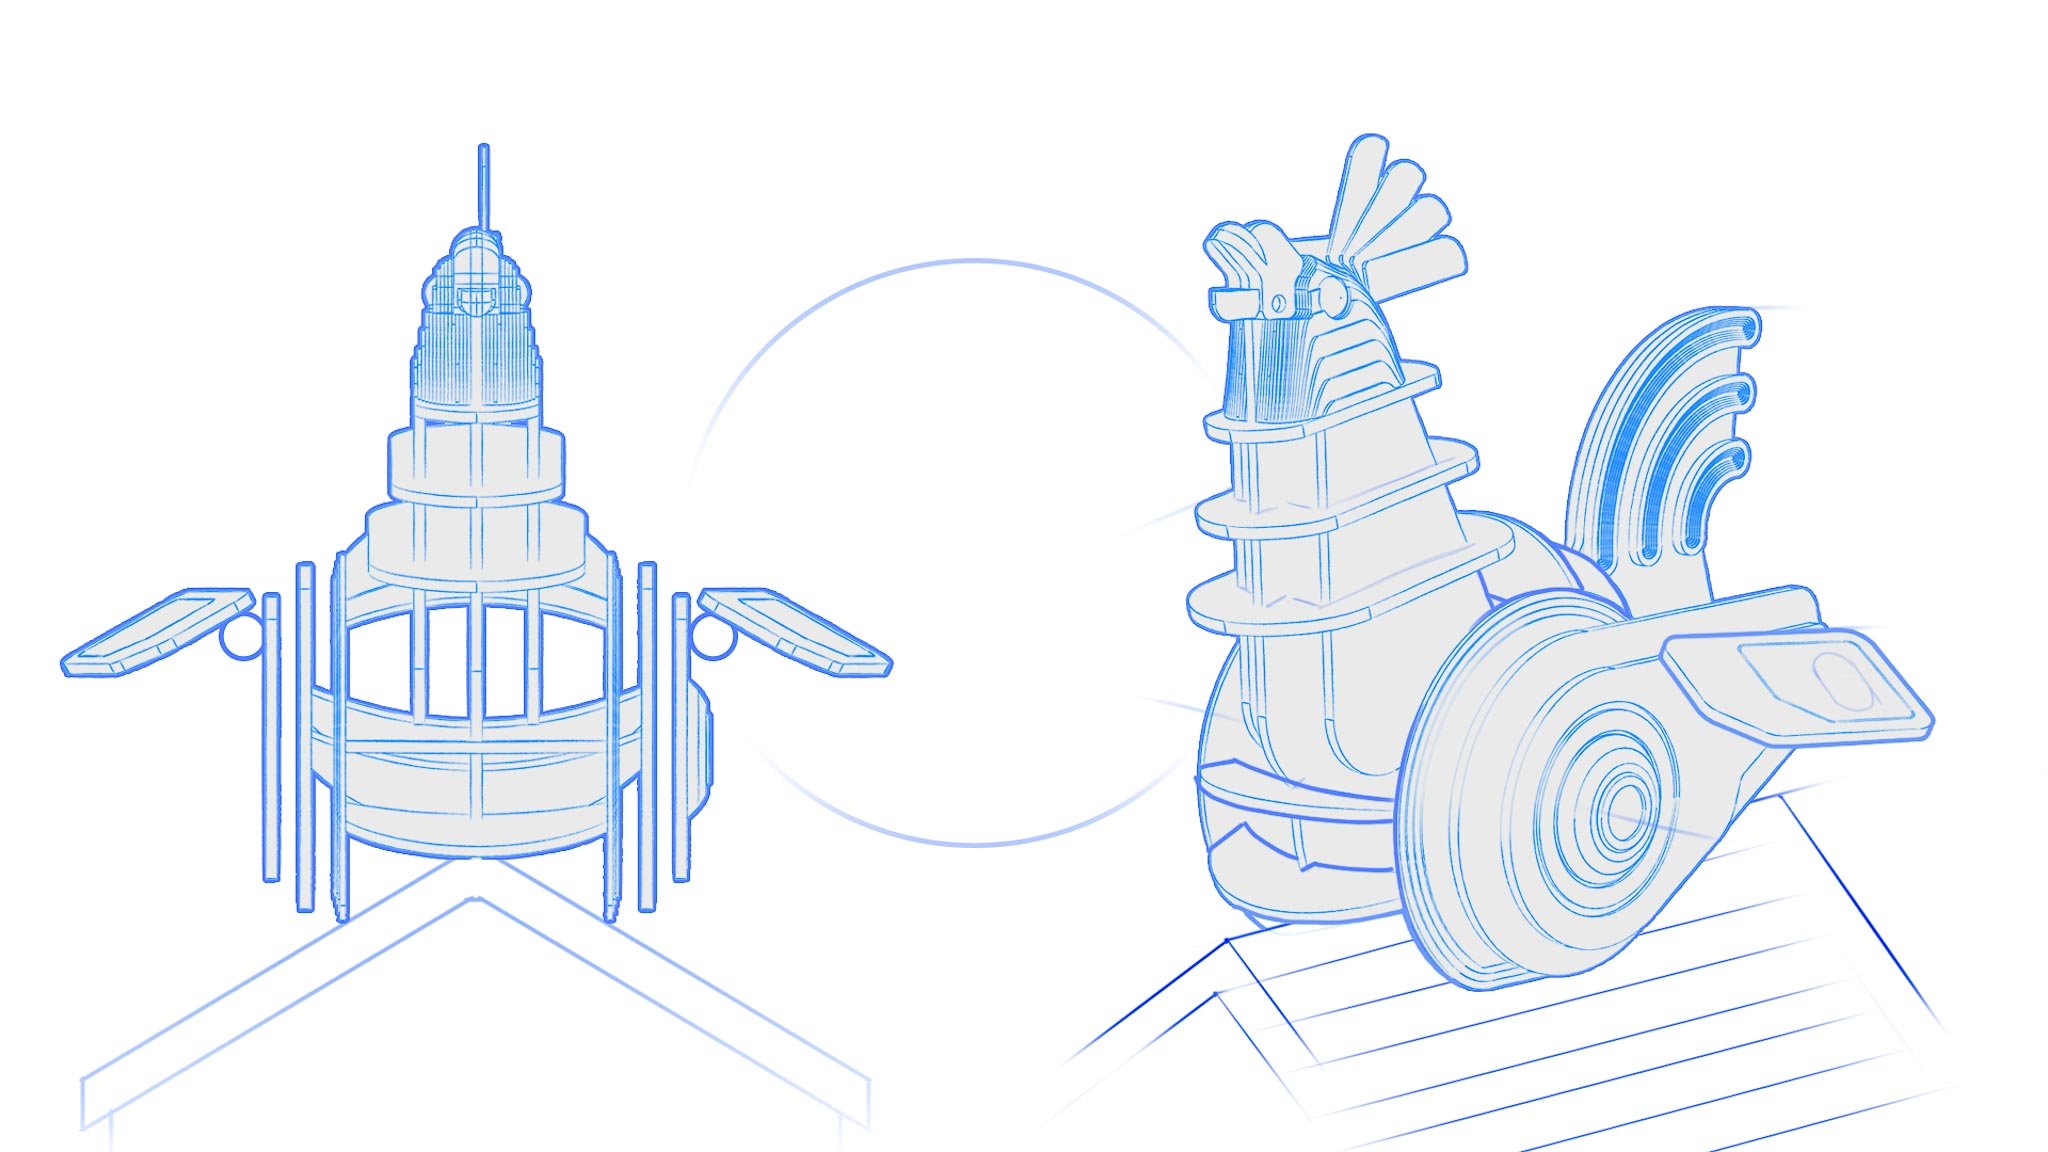 ee glastonbury rooster booster sketch.jpg